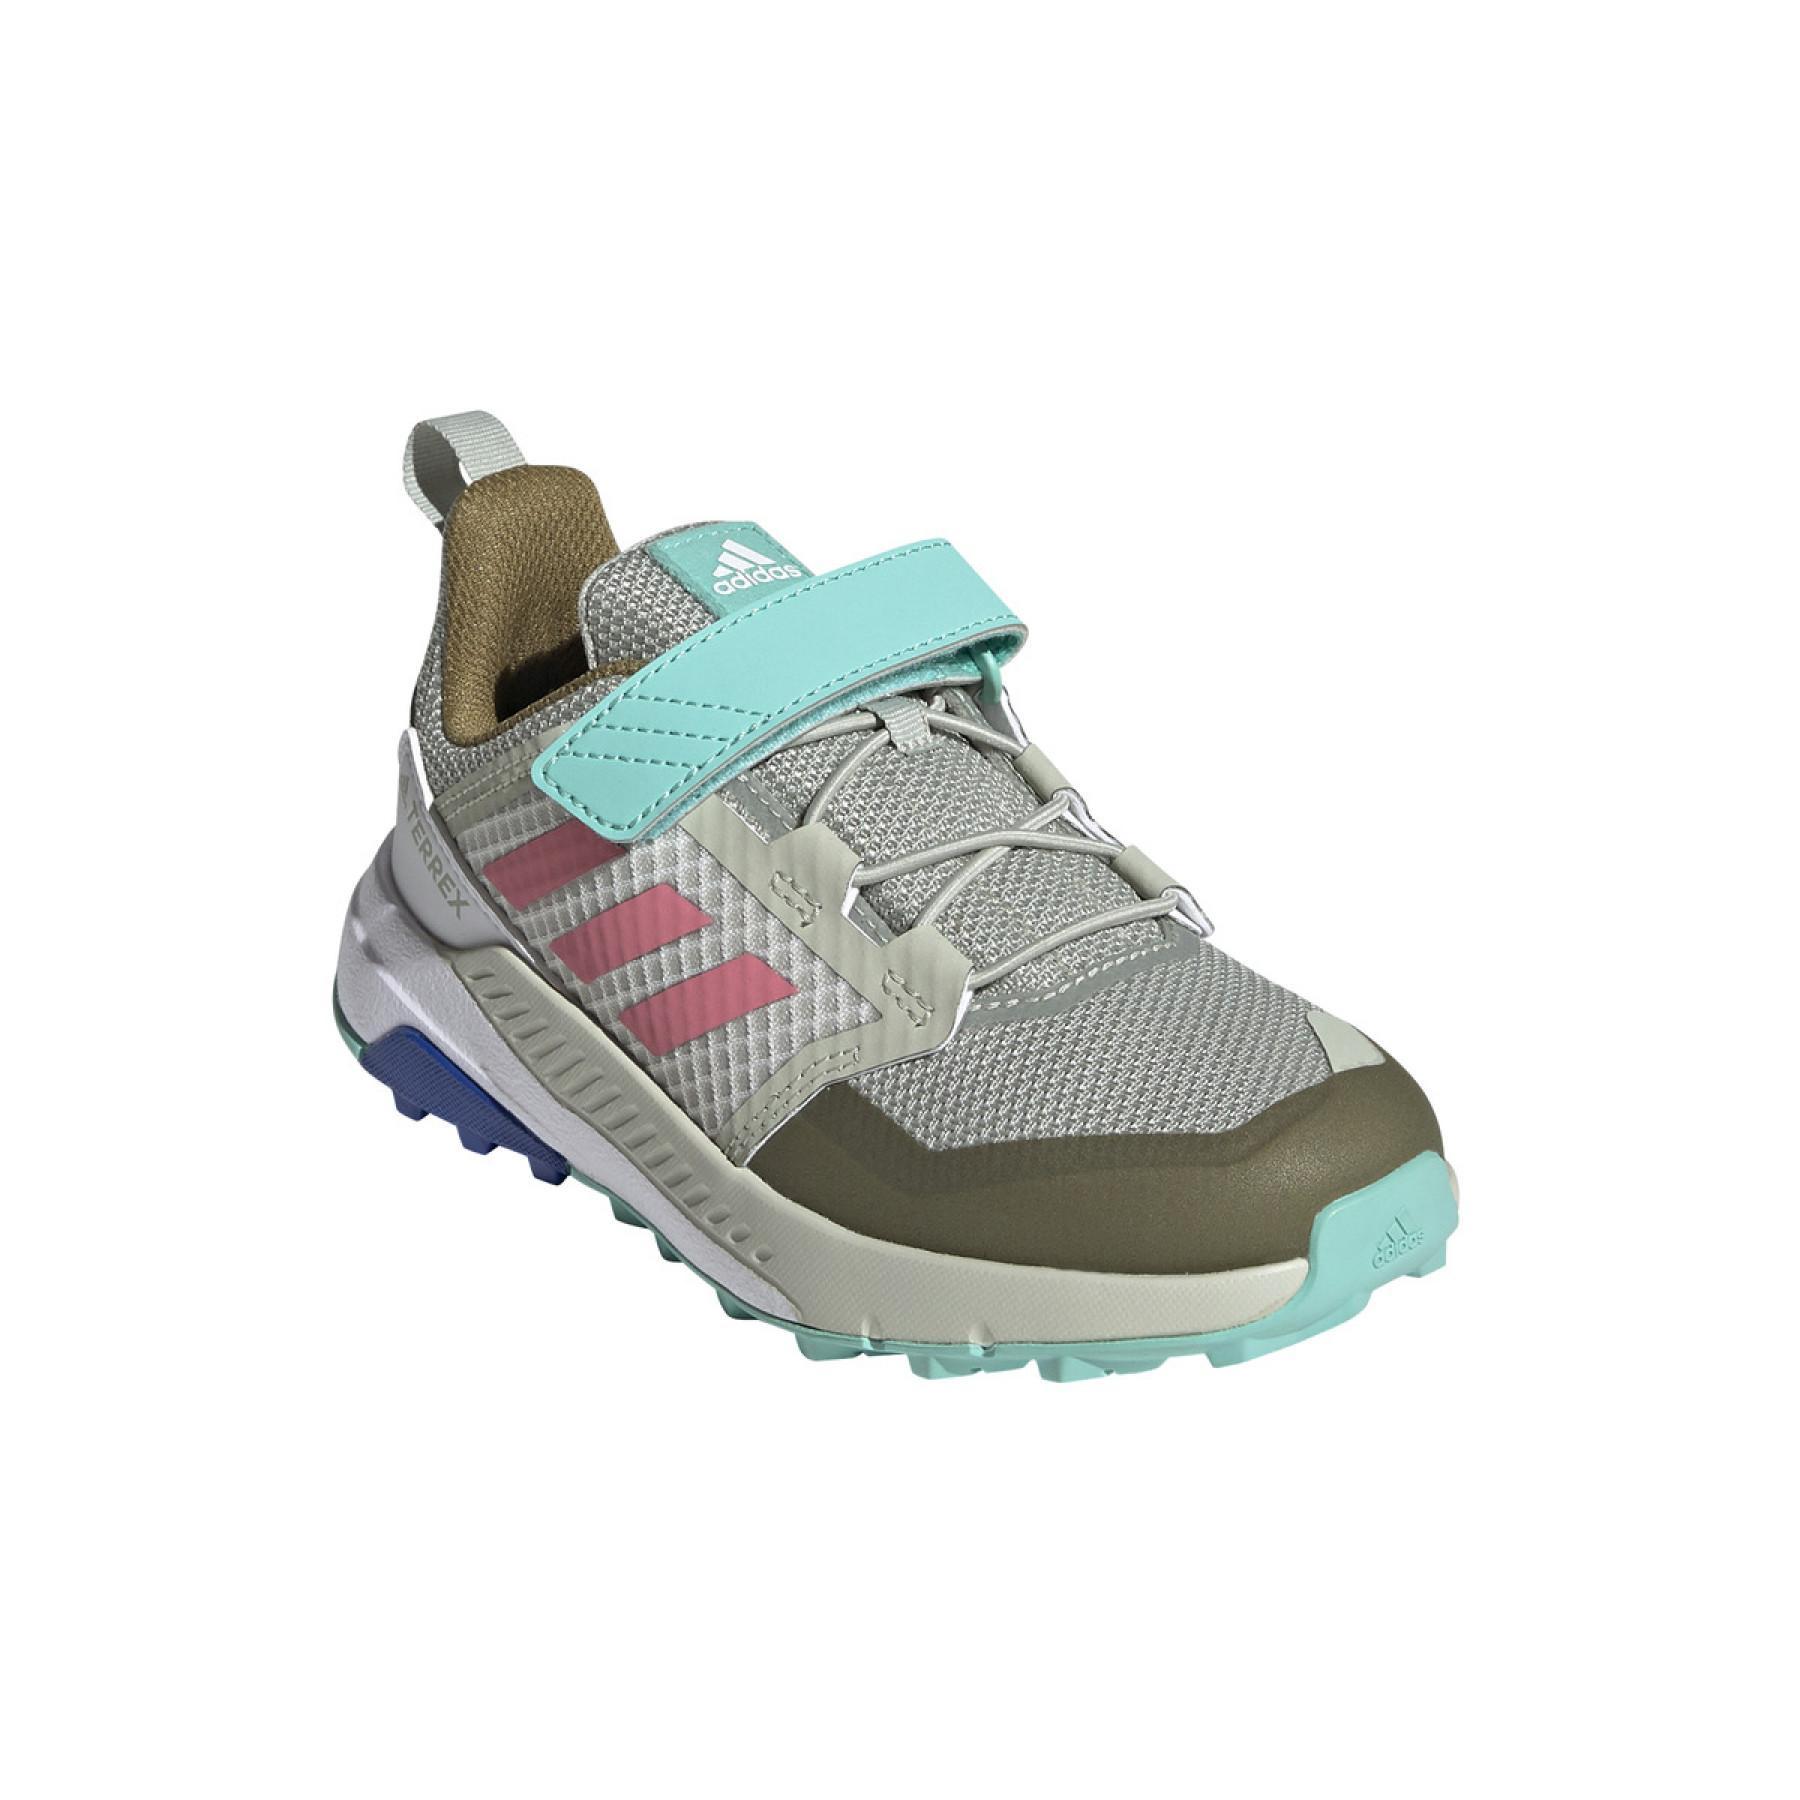 Chaussures de randonnée enfant Adidas Terrex trailmaker